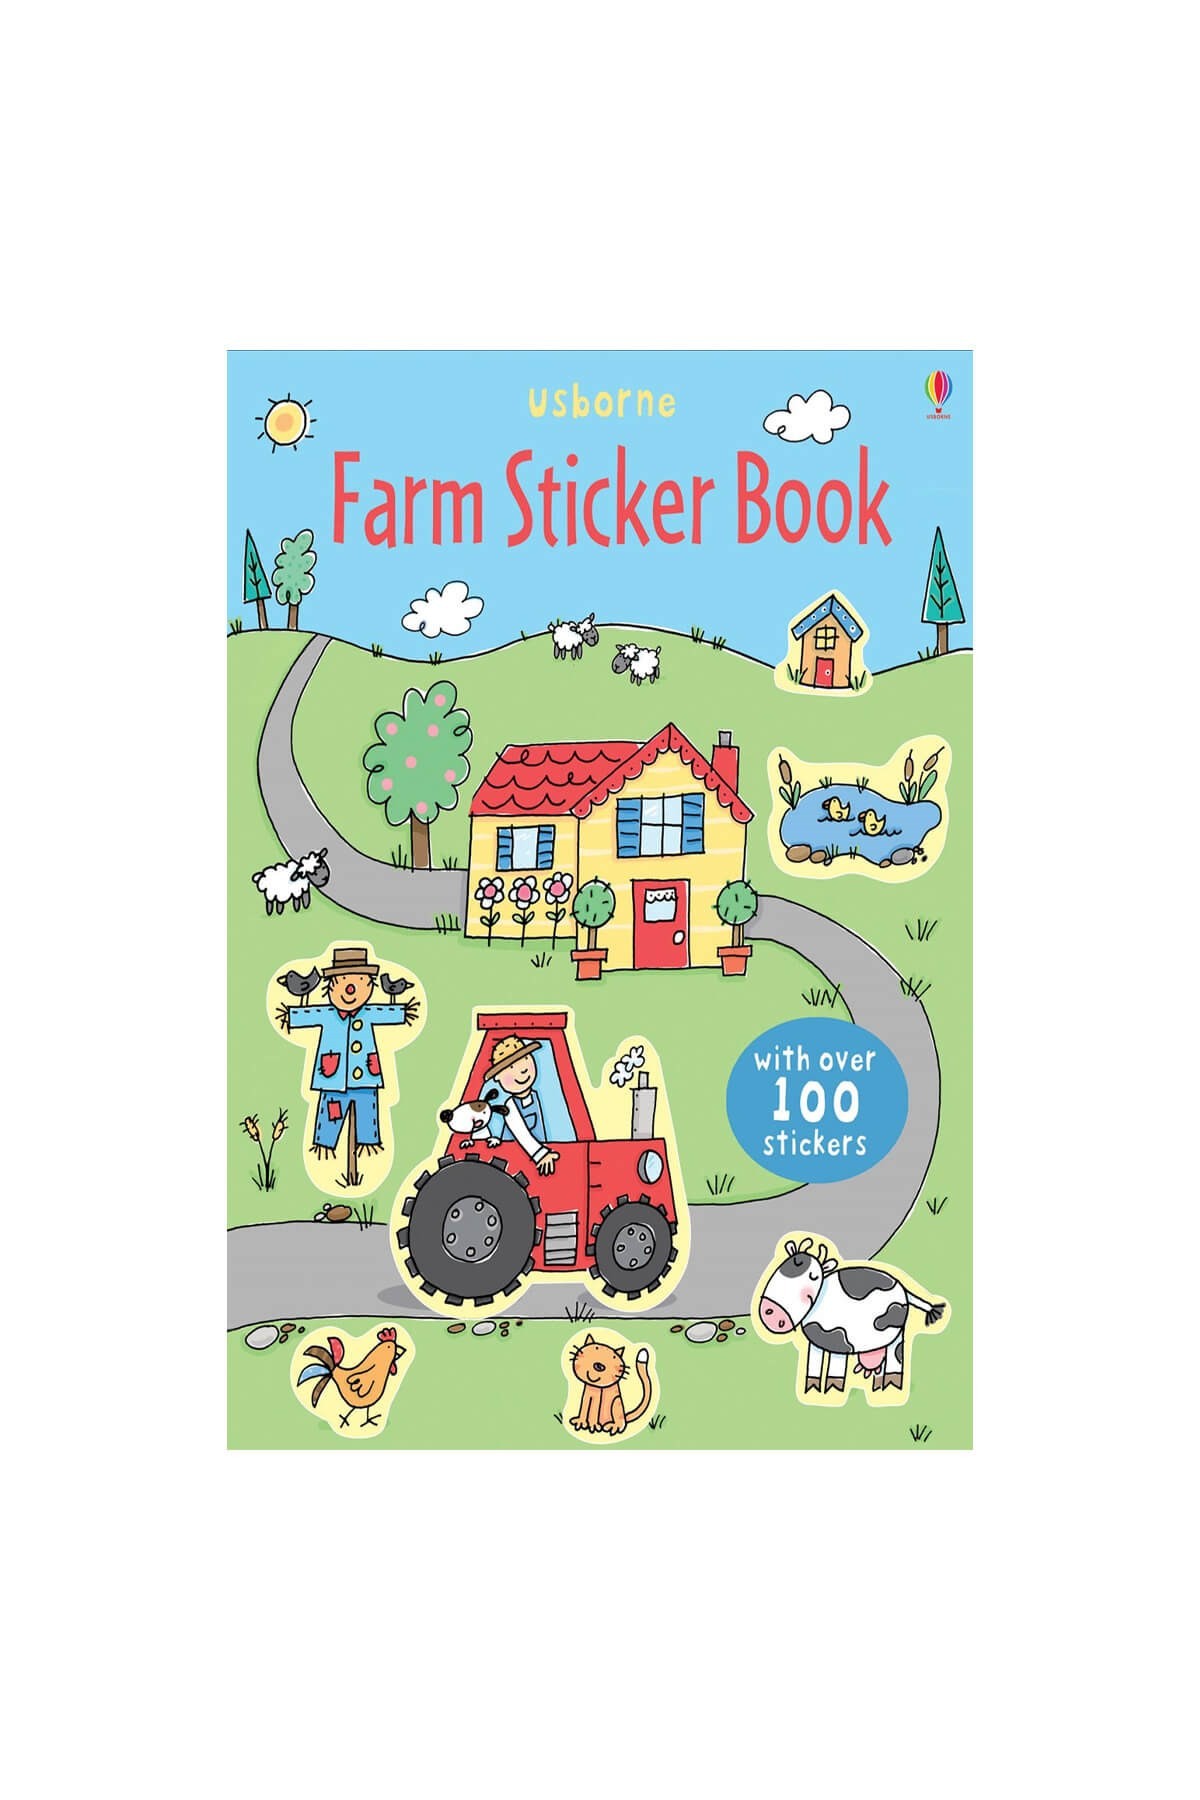 The Usborne Farm Sticker Book